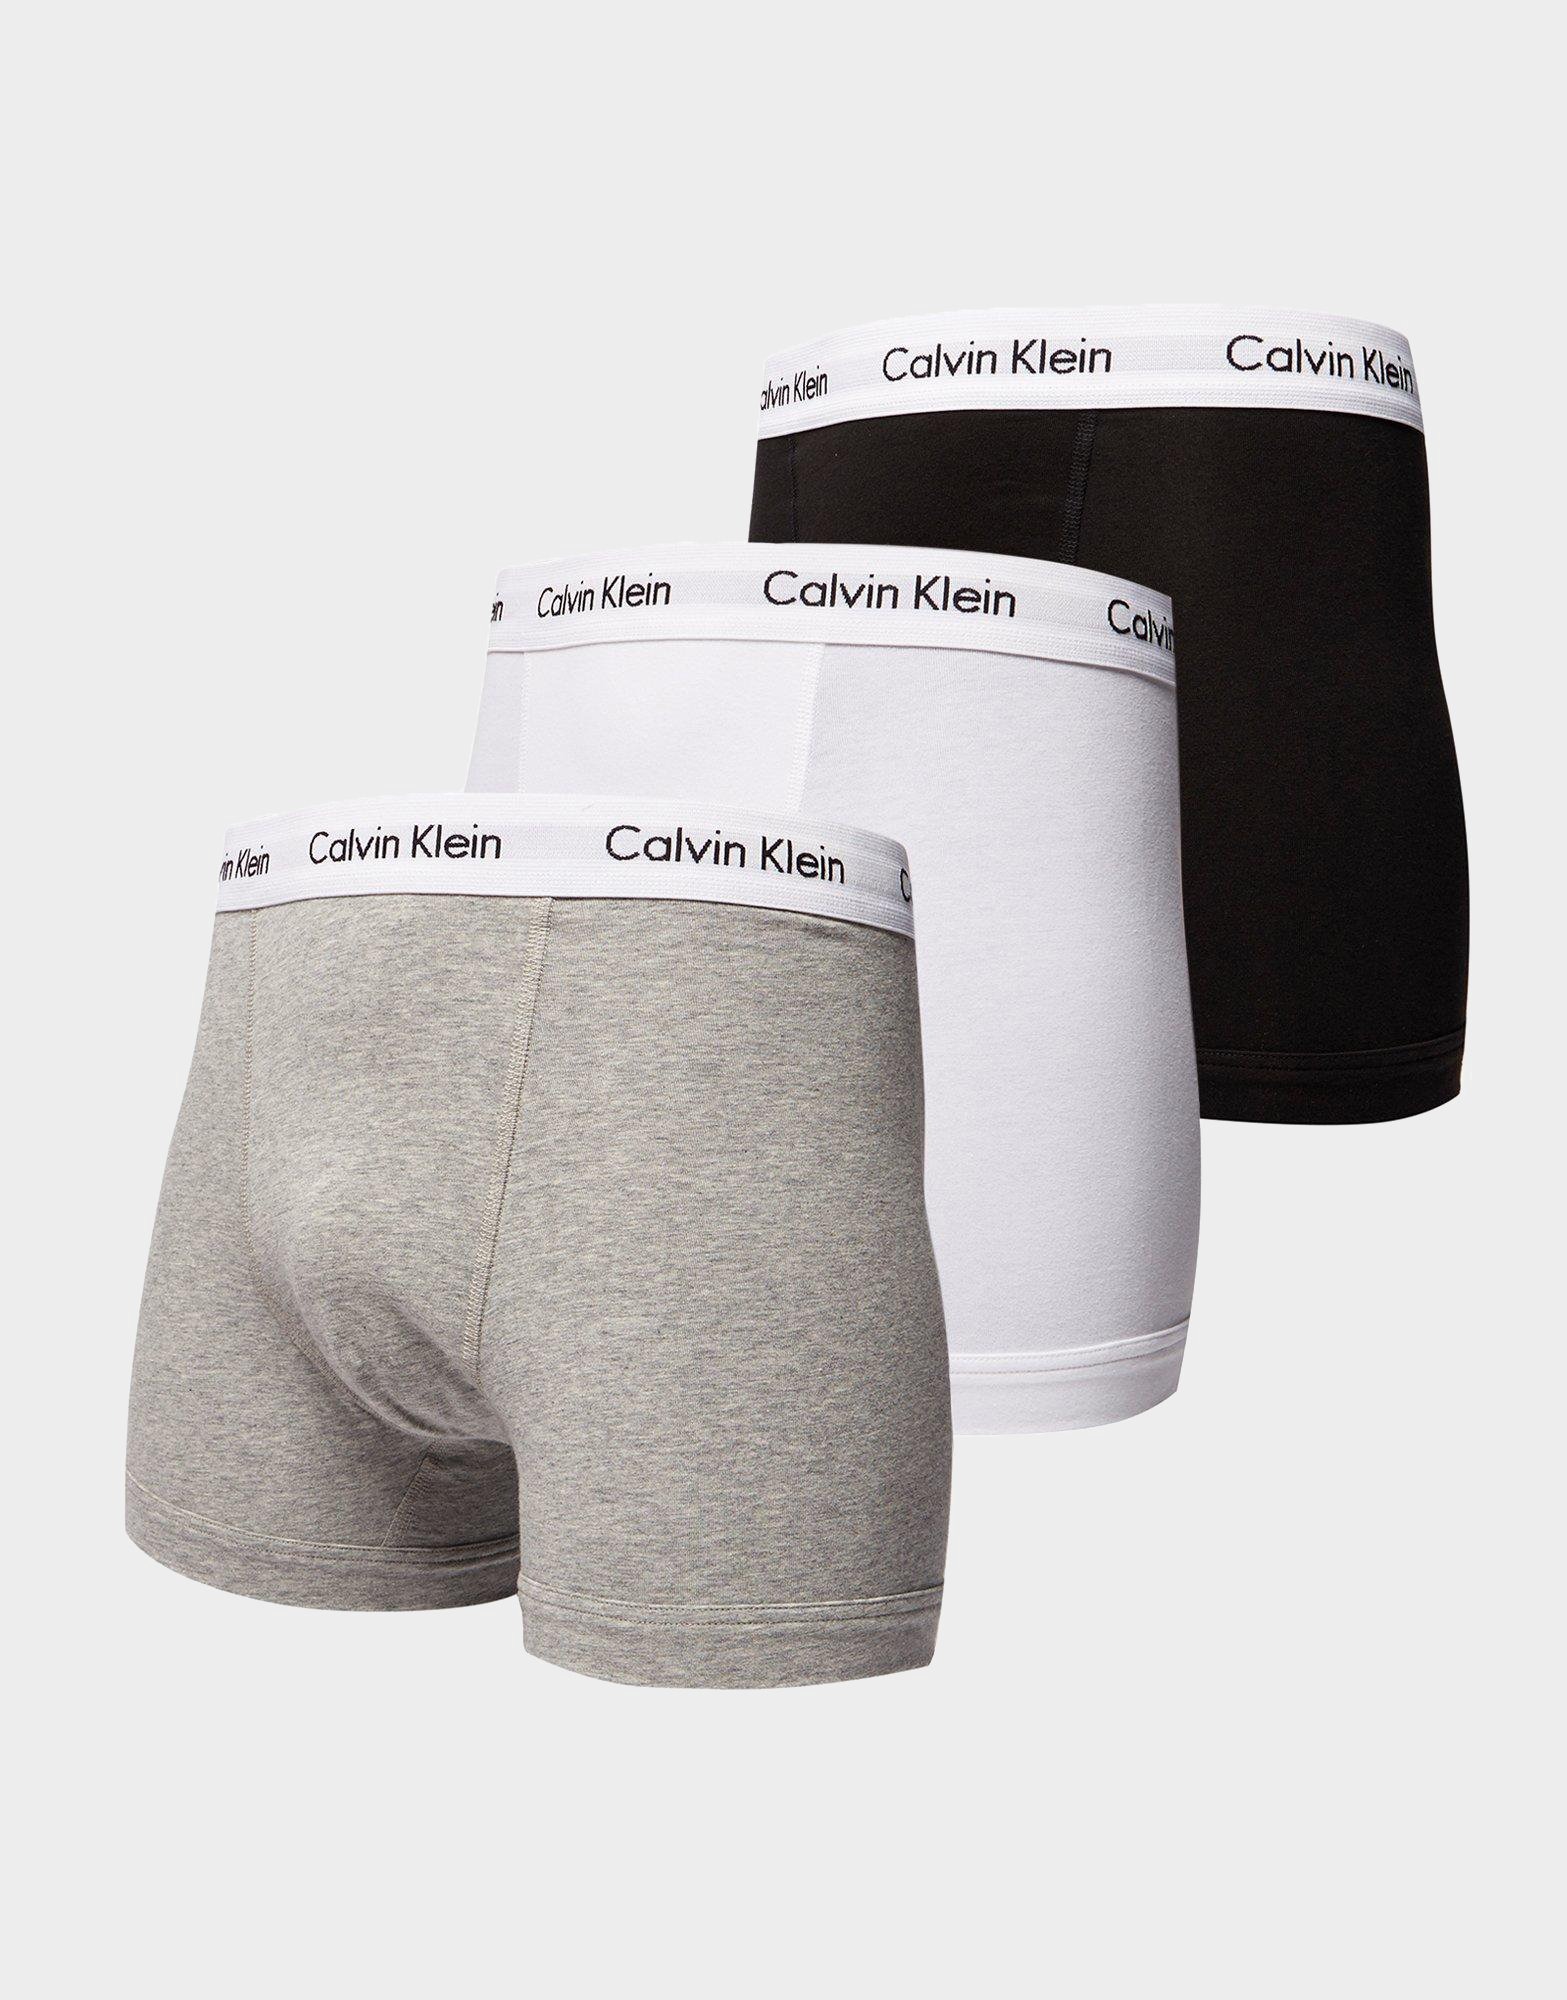 Ambassade vergeten Materialisme Buy Black Calvin Klein Underwear 3 Pack Trunks